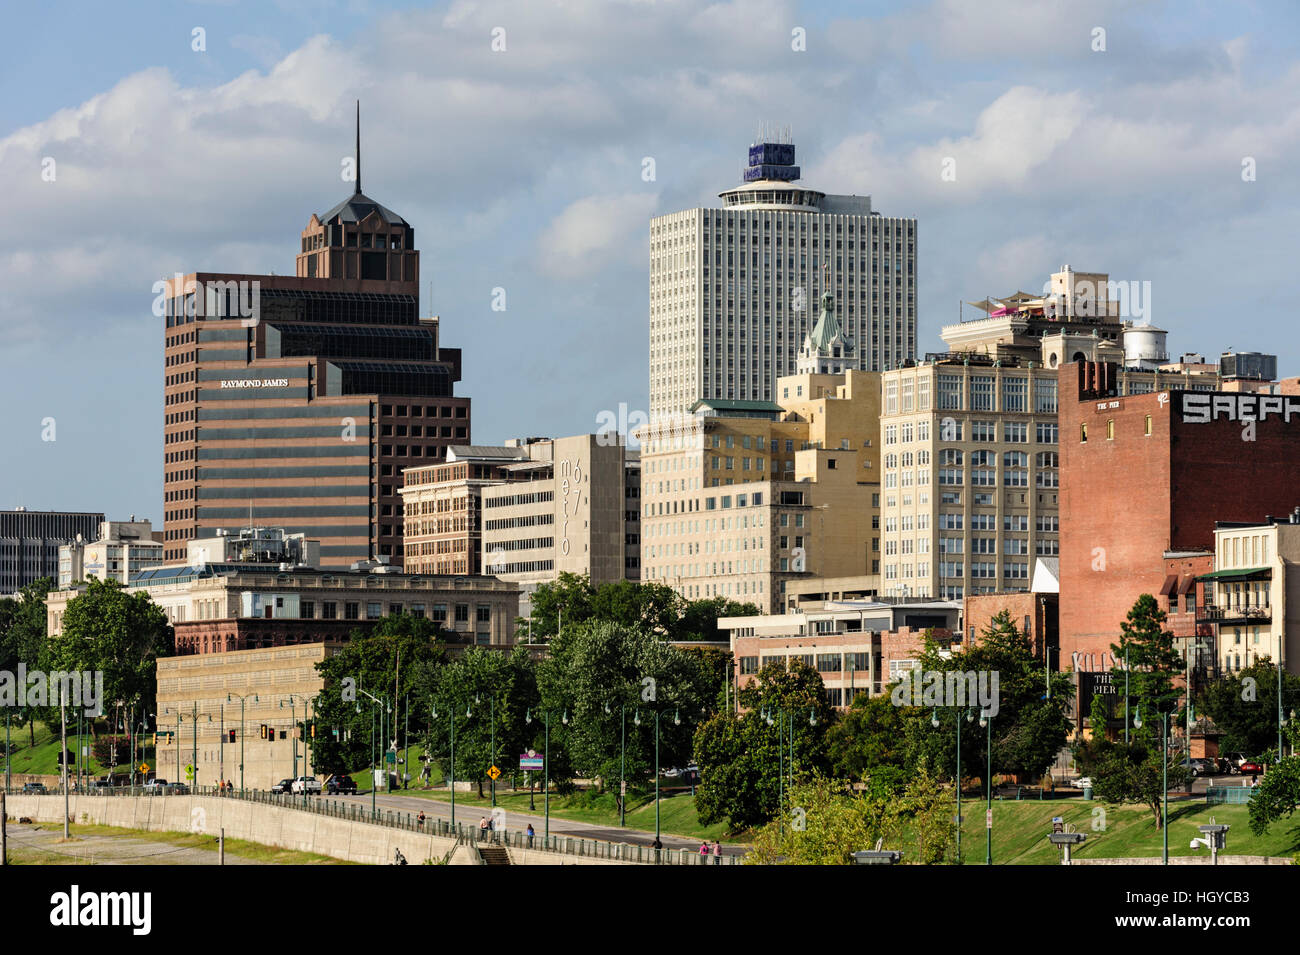 La ville de Memphis, Tennessee, USA. Le plus grand bâtiment à Memphis depuis 1965 est la 100 Nord (Principal bâtiment blanc au centre de la photo). Banque D'Images